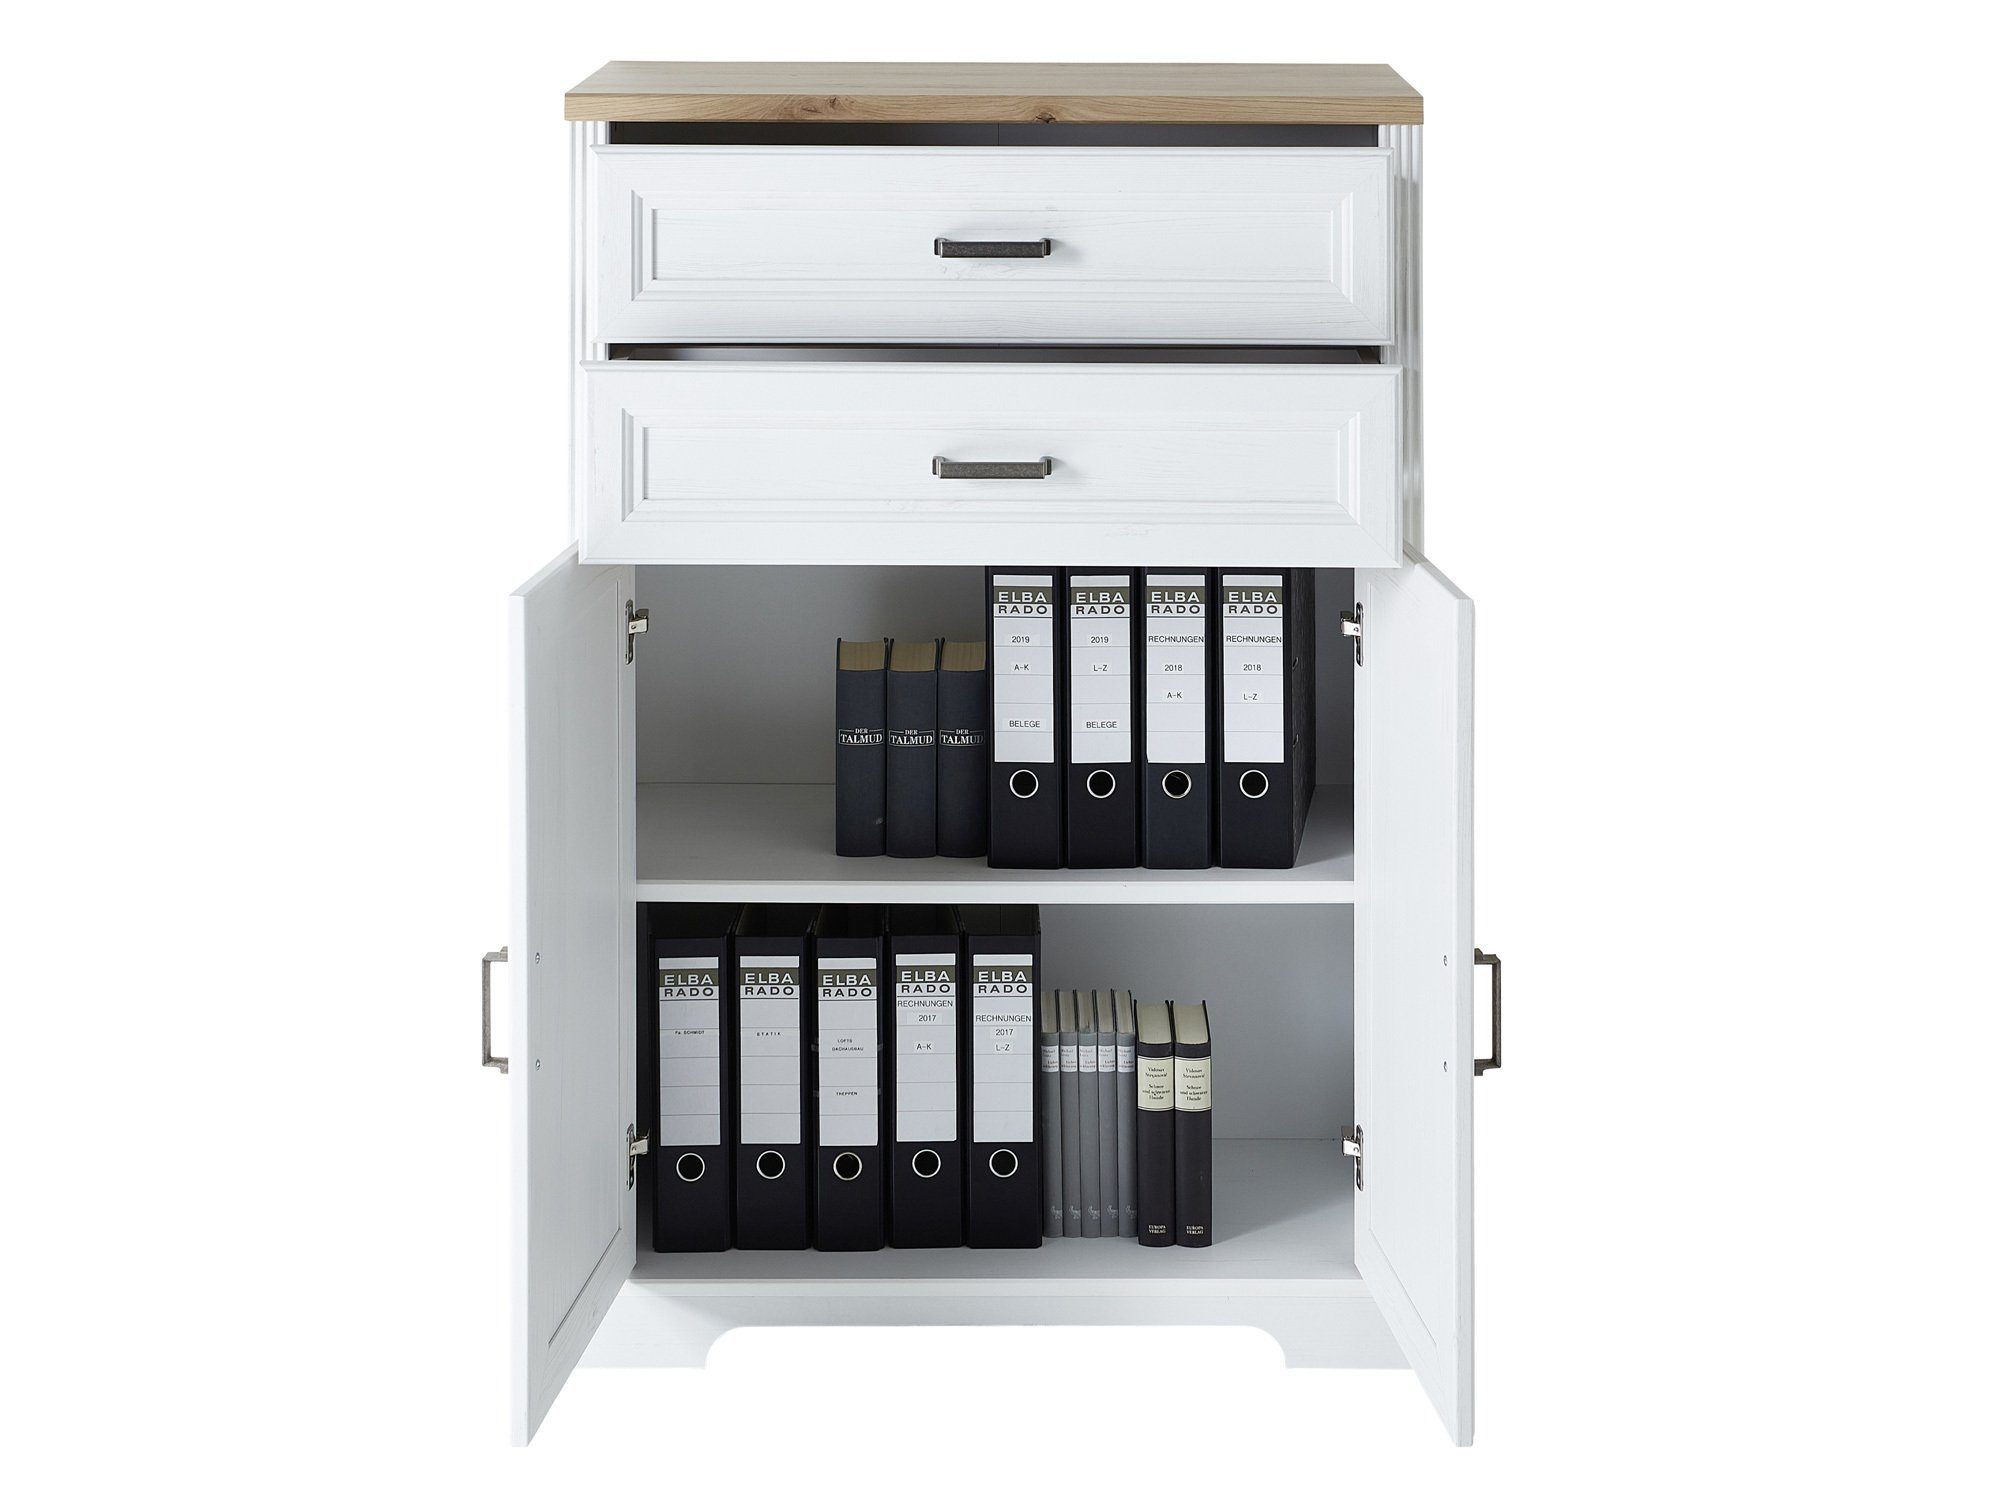 2 Bürokommode, Bücherregal, Schubkästen, JADY piniefarbig + Moebel-Eins 2 hell/eichefarbig MDF/Dekorspanplatte Material Türen